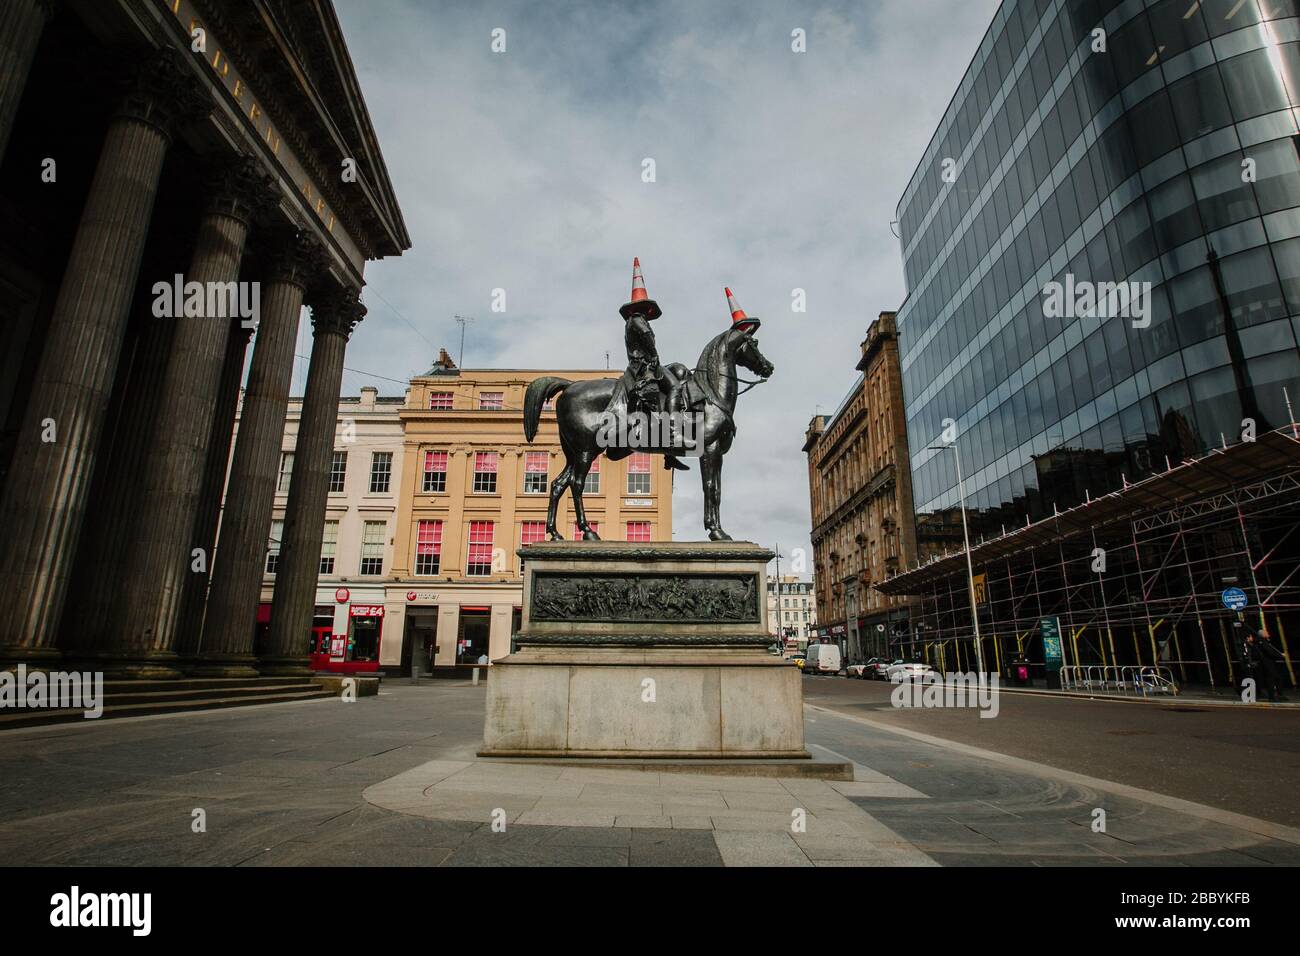 Statua del Duca di Wellington fuori dalla Galleria d'Arte moderna, Glasgow, durante il blocco pandemico del virus Corona, quando le strade della città sono molto tranquille. Foto Stock